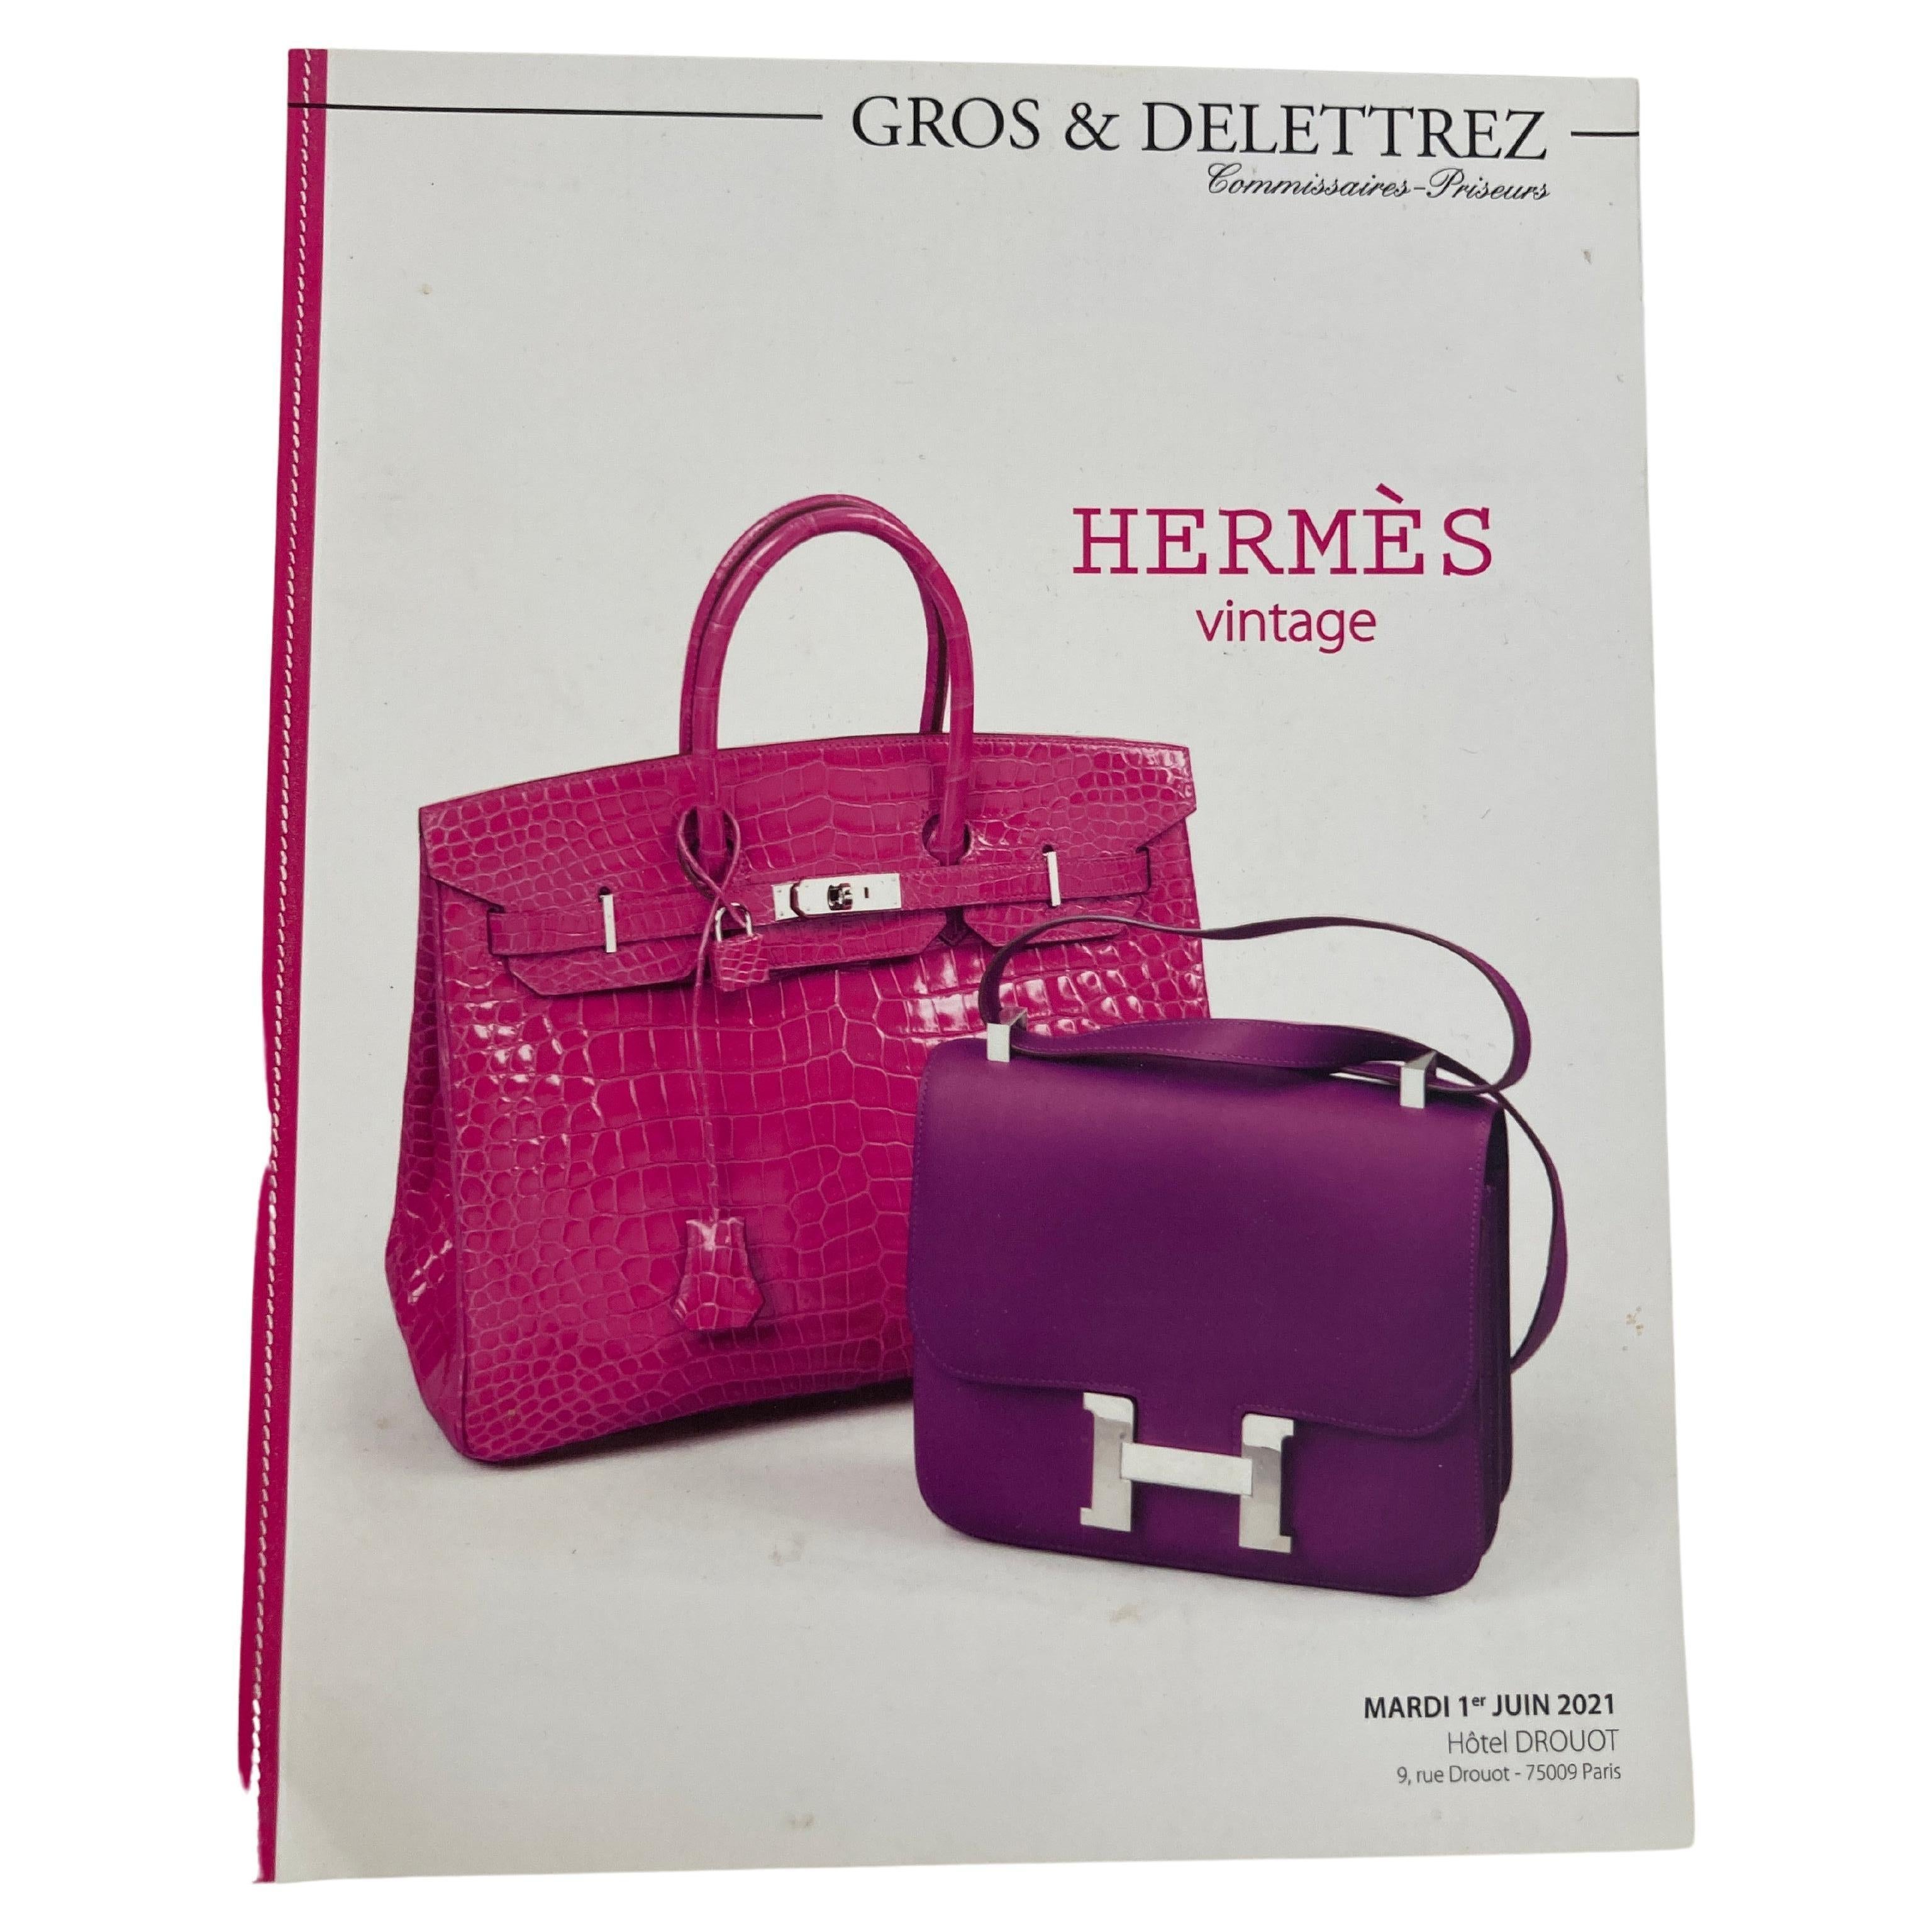 Catalogue des ventes aux enchères vintage d'Hermès Paris 2021 publié par Gros & Delettrez en vente